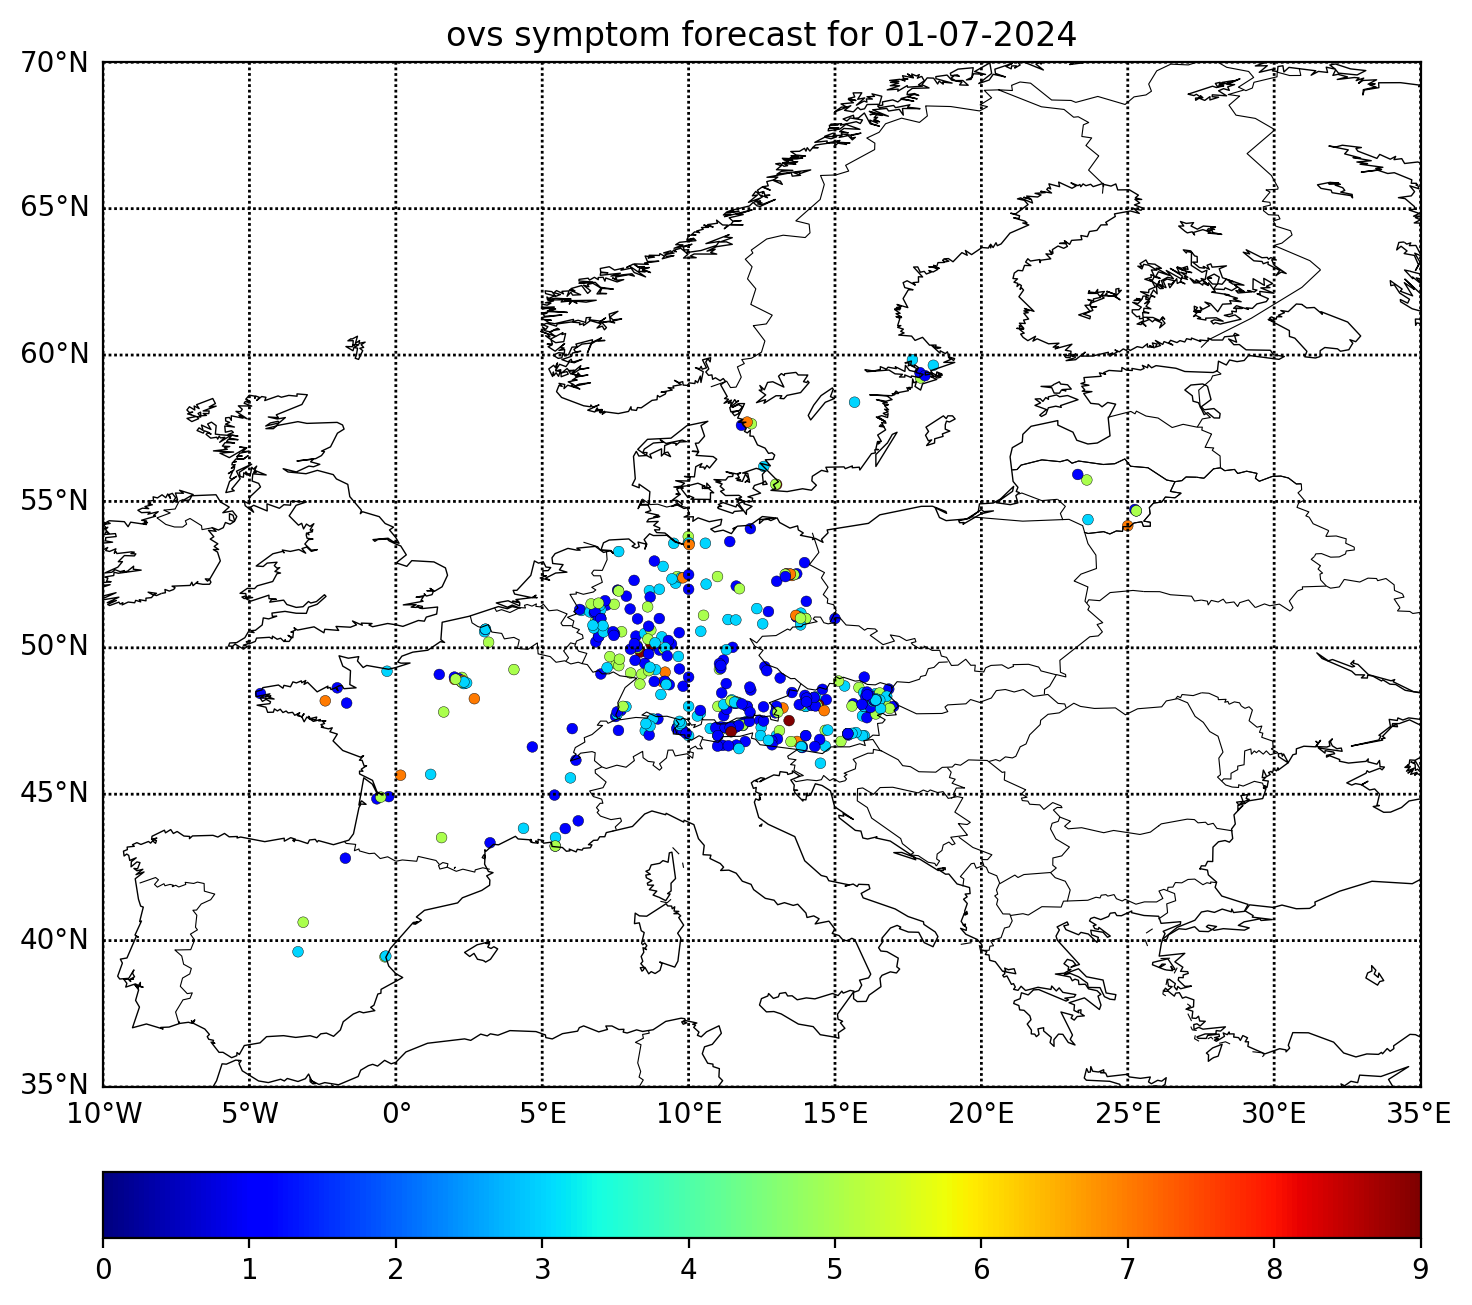 http://repo.realtime.sa.vu.lt/maps/symptom/sympt_forecast_ovs_europe_20240701.png